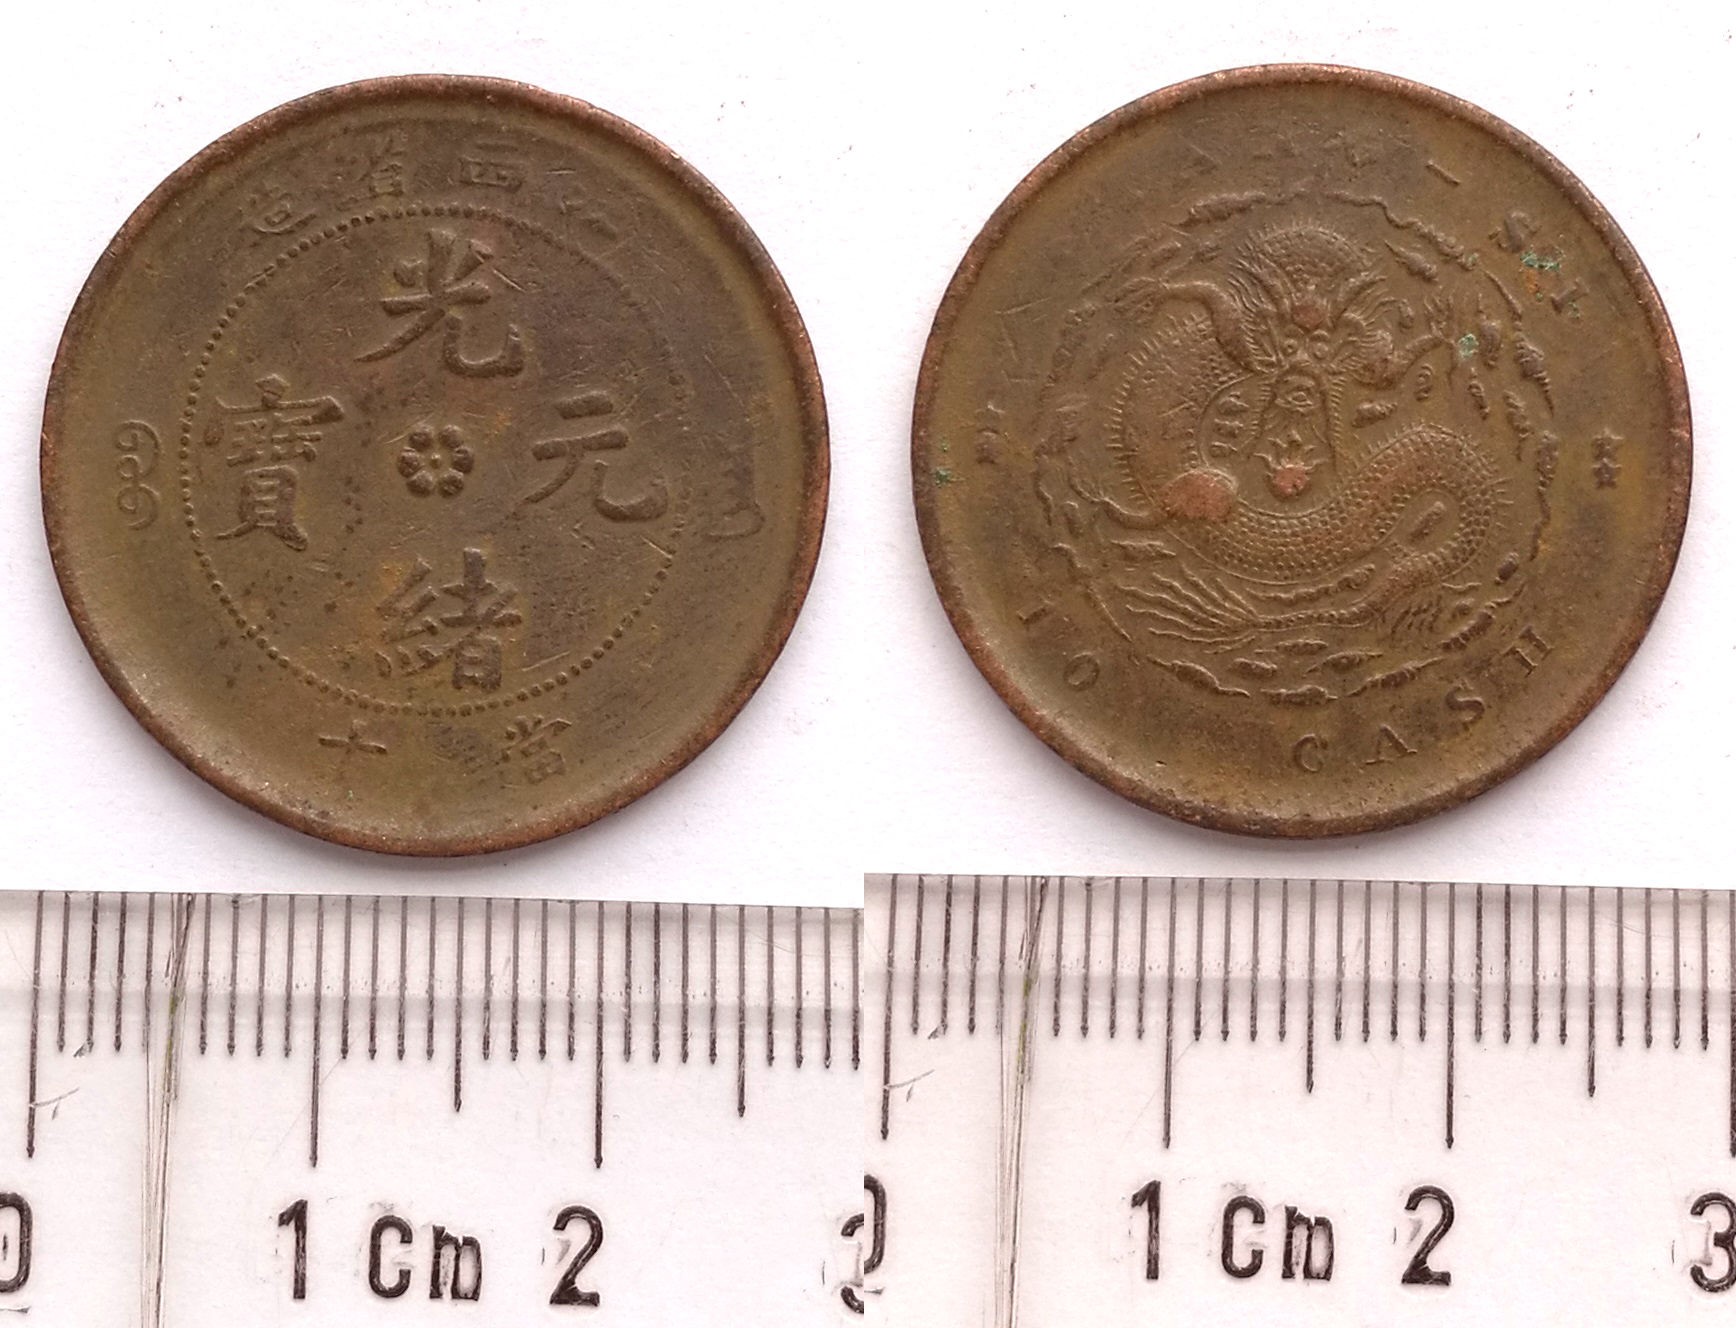 K5280, Kiang-Si Province 10 Cash Dragon Coin, China Emperor 1902